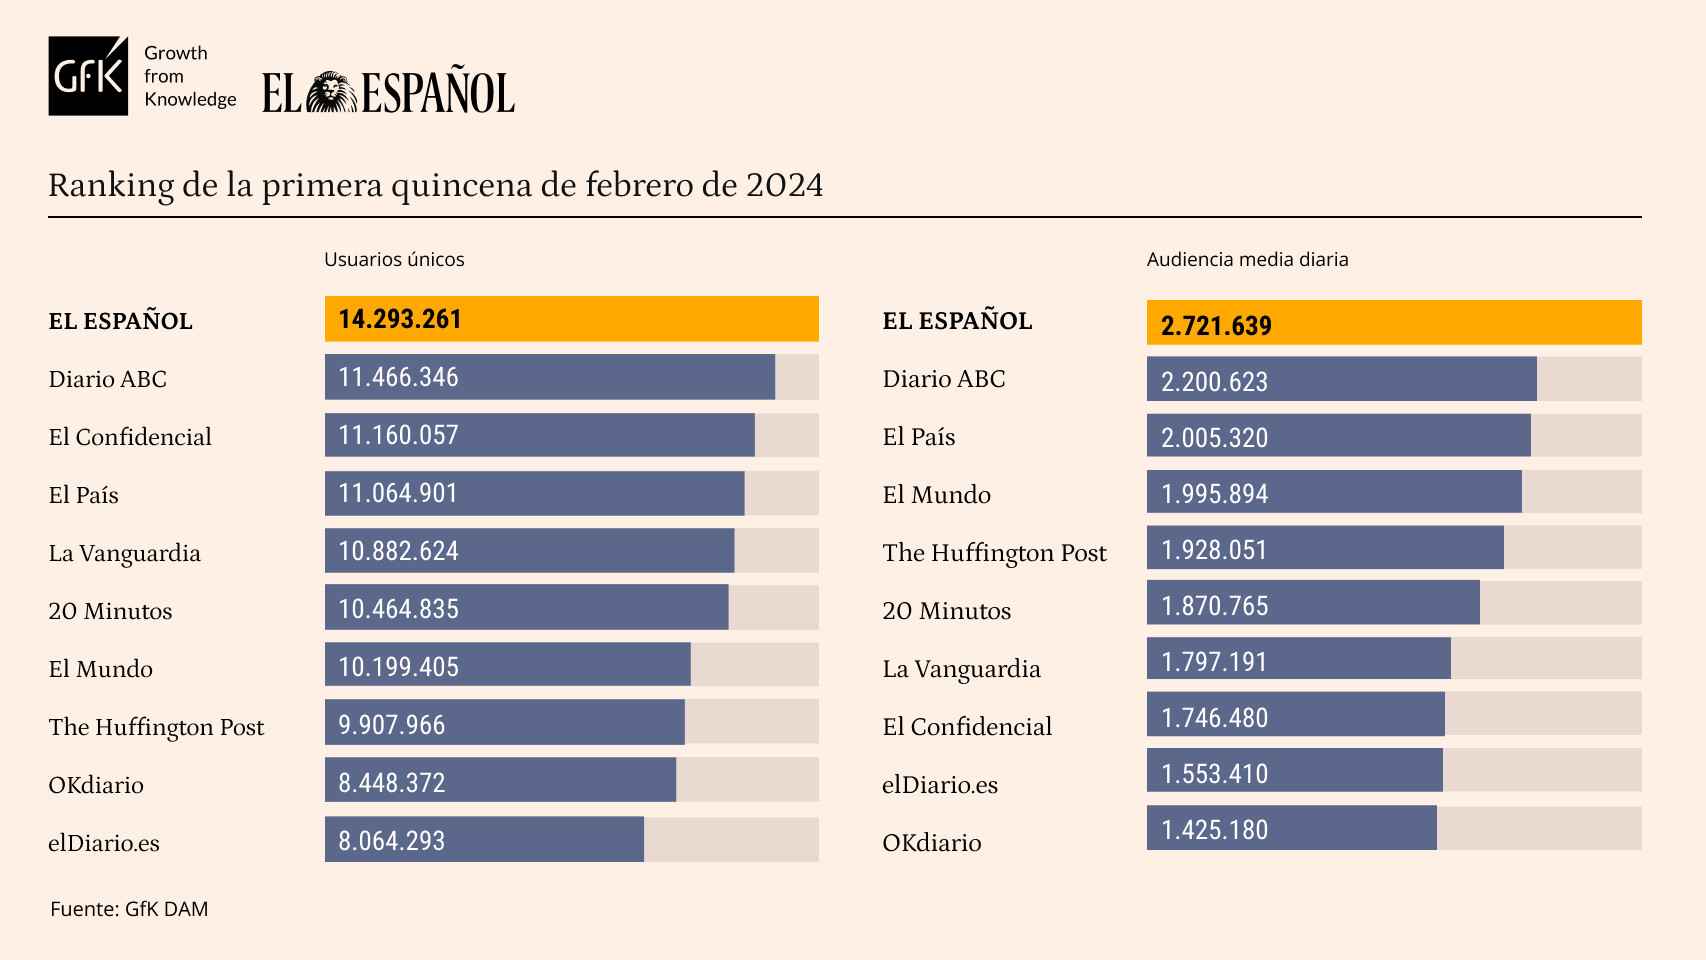 El Español aún más líder en febrero: vuelve a batir sus récords en usuarios únicos y audiencia diaria